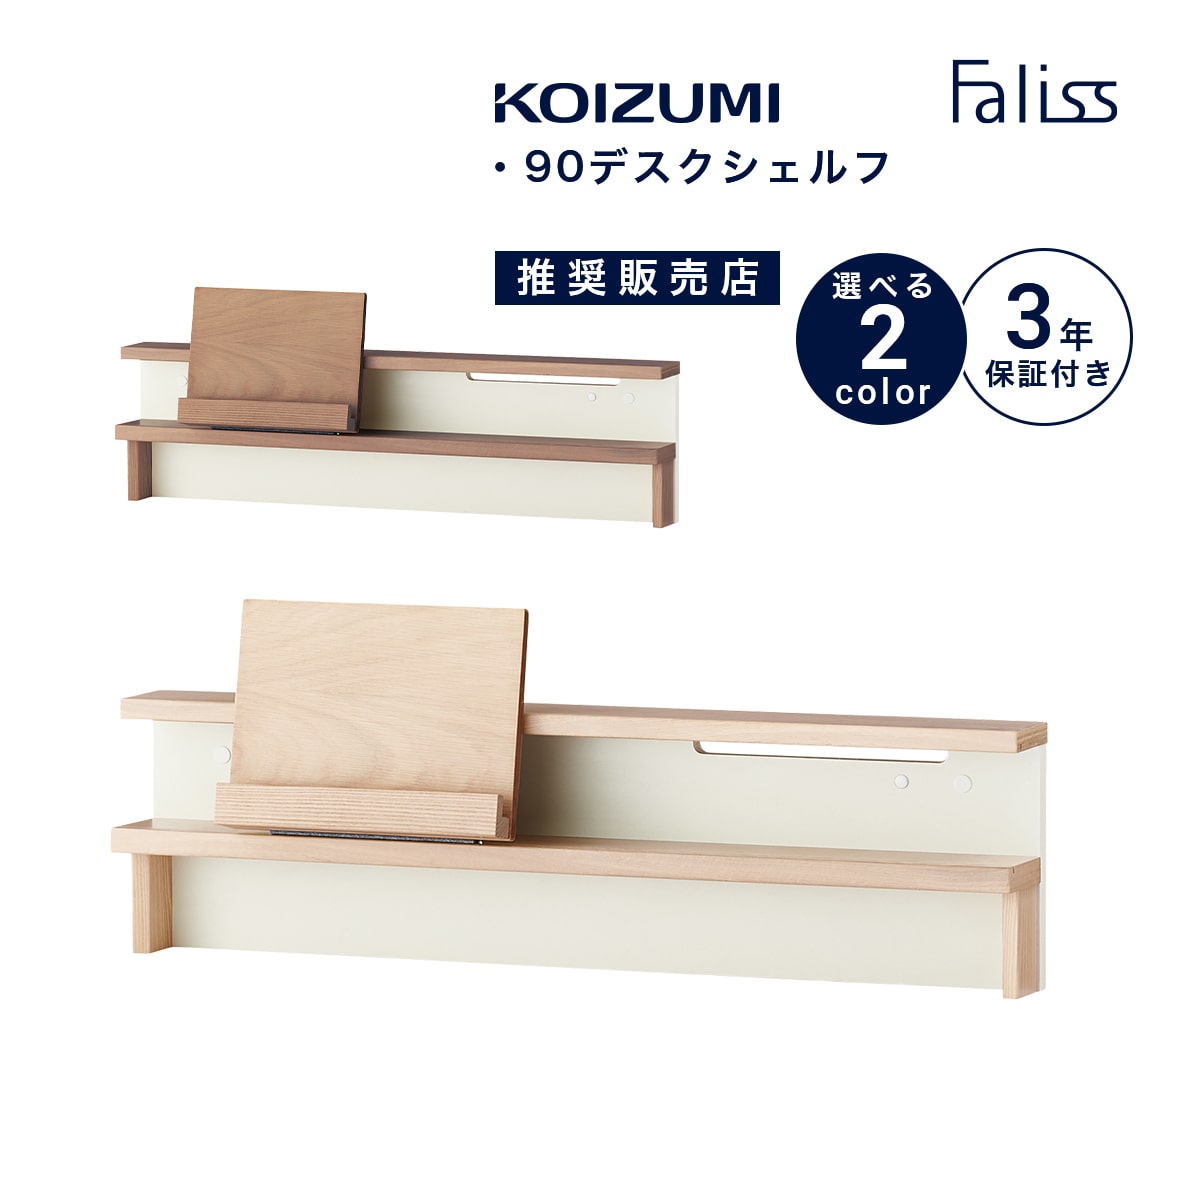 KOIZUMI コイズミ ダイニング リビング ベンチ 木製 ナチュラル 家具